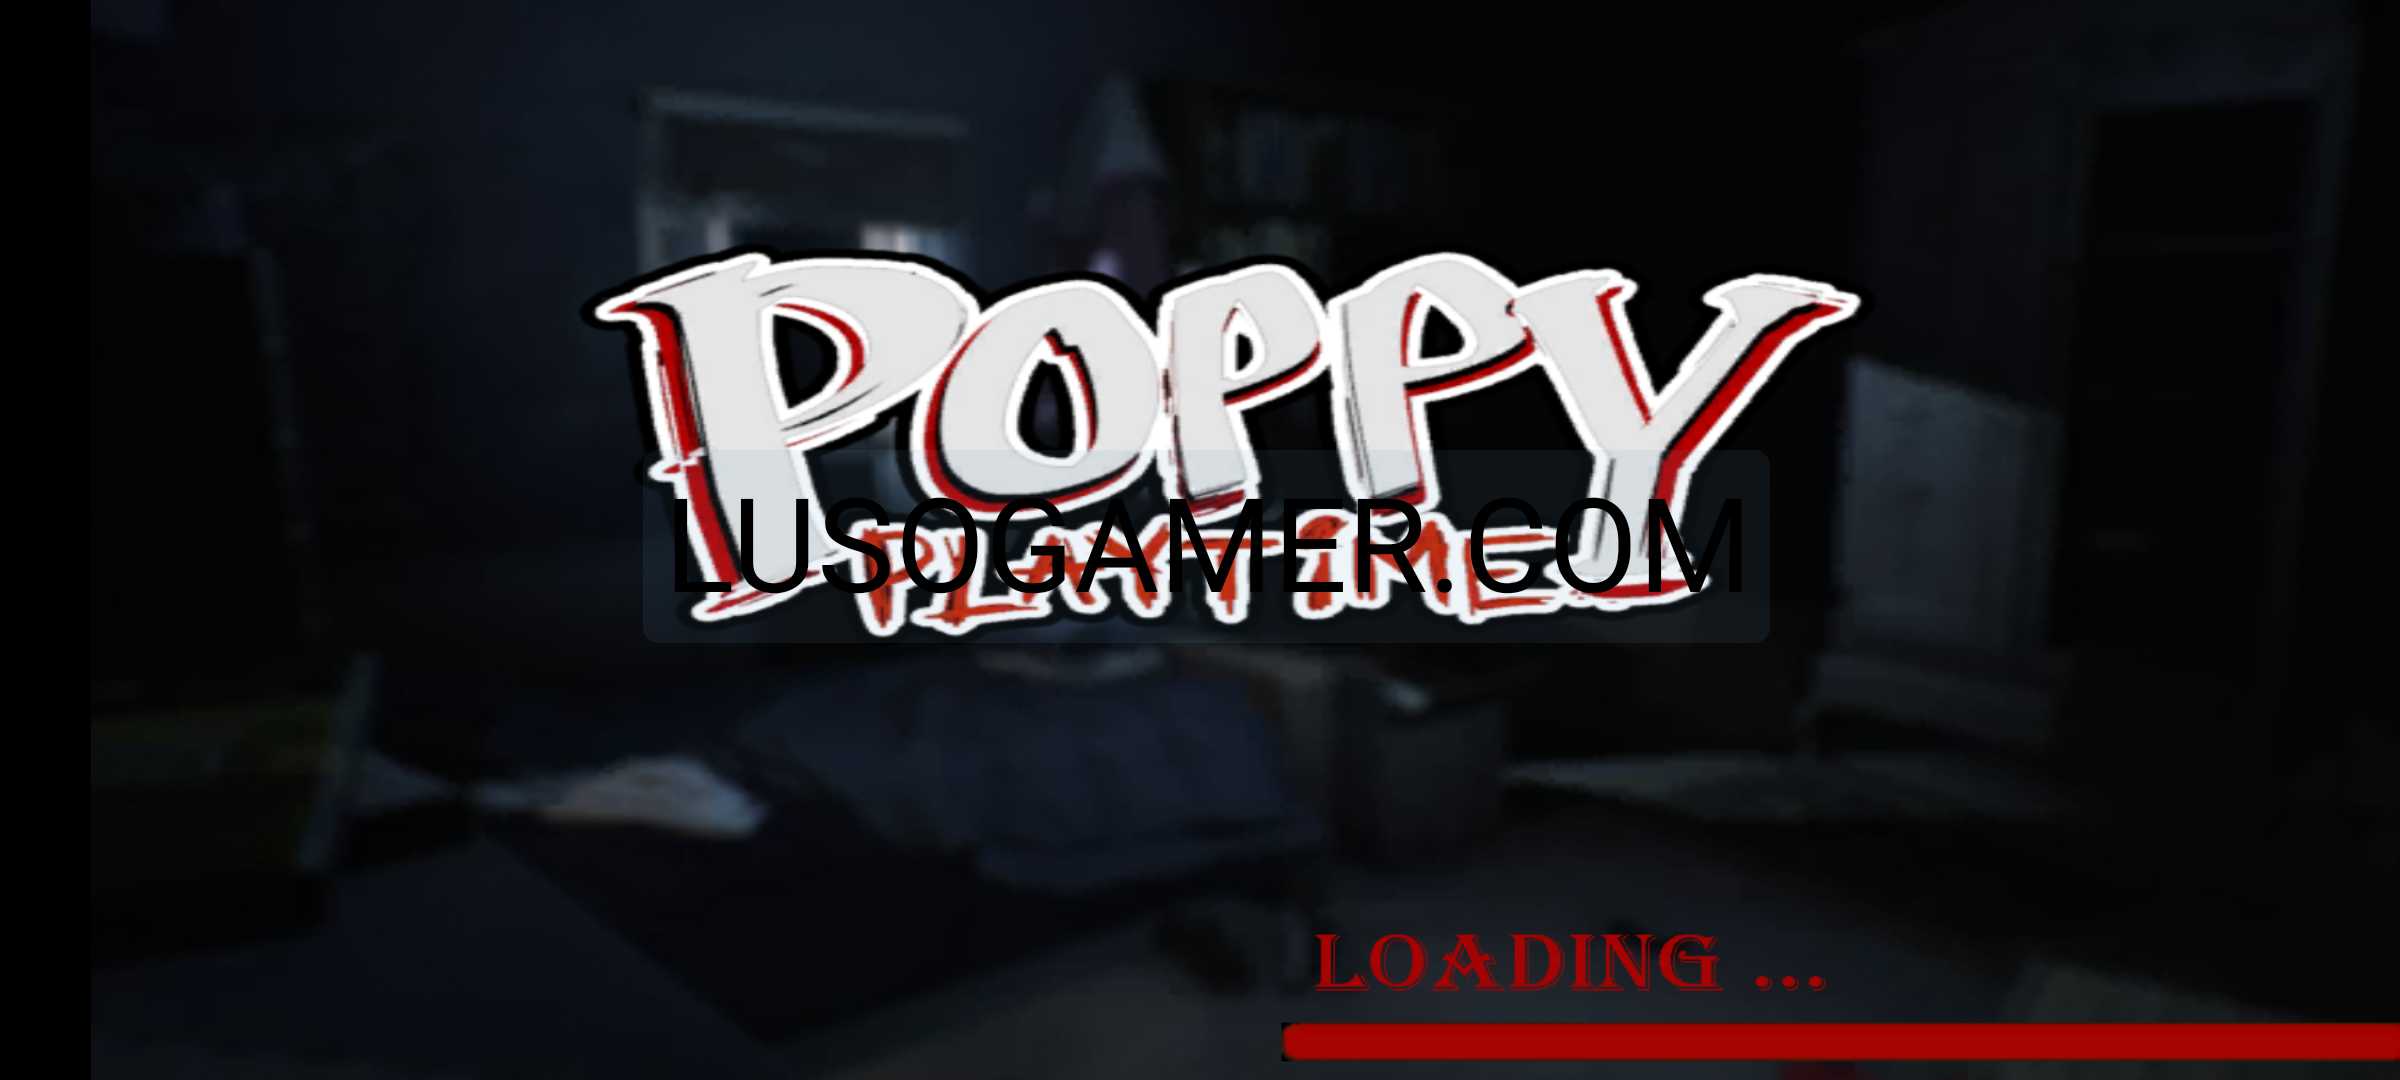 Poppy Playtime Capítulo 2 Apk Descargar para Android [Juego]